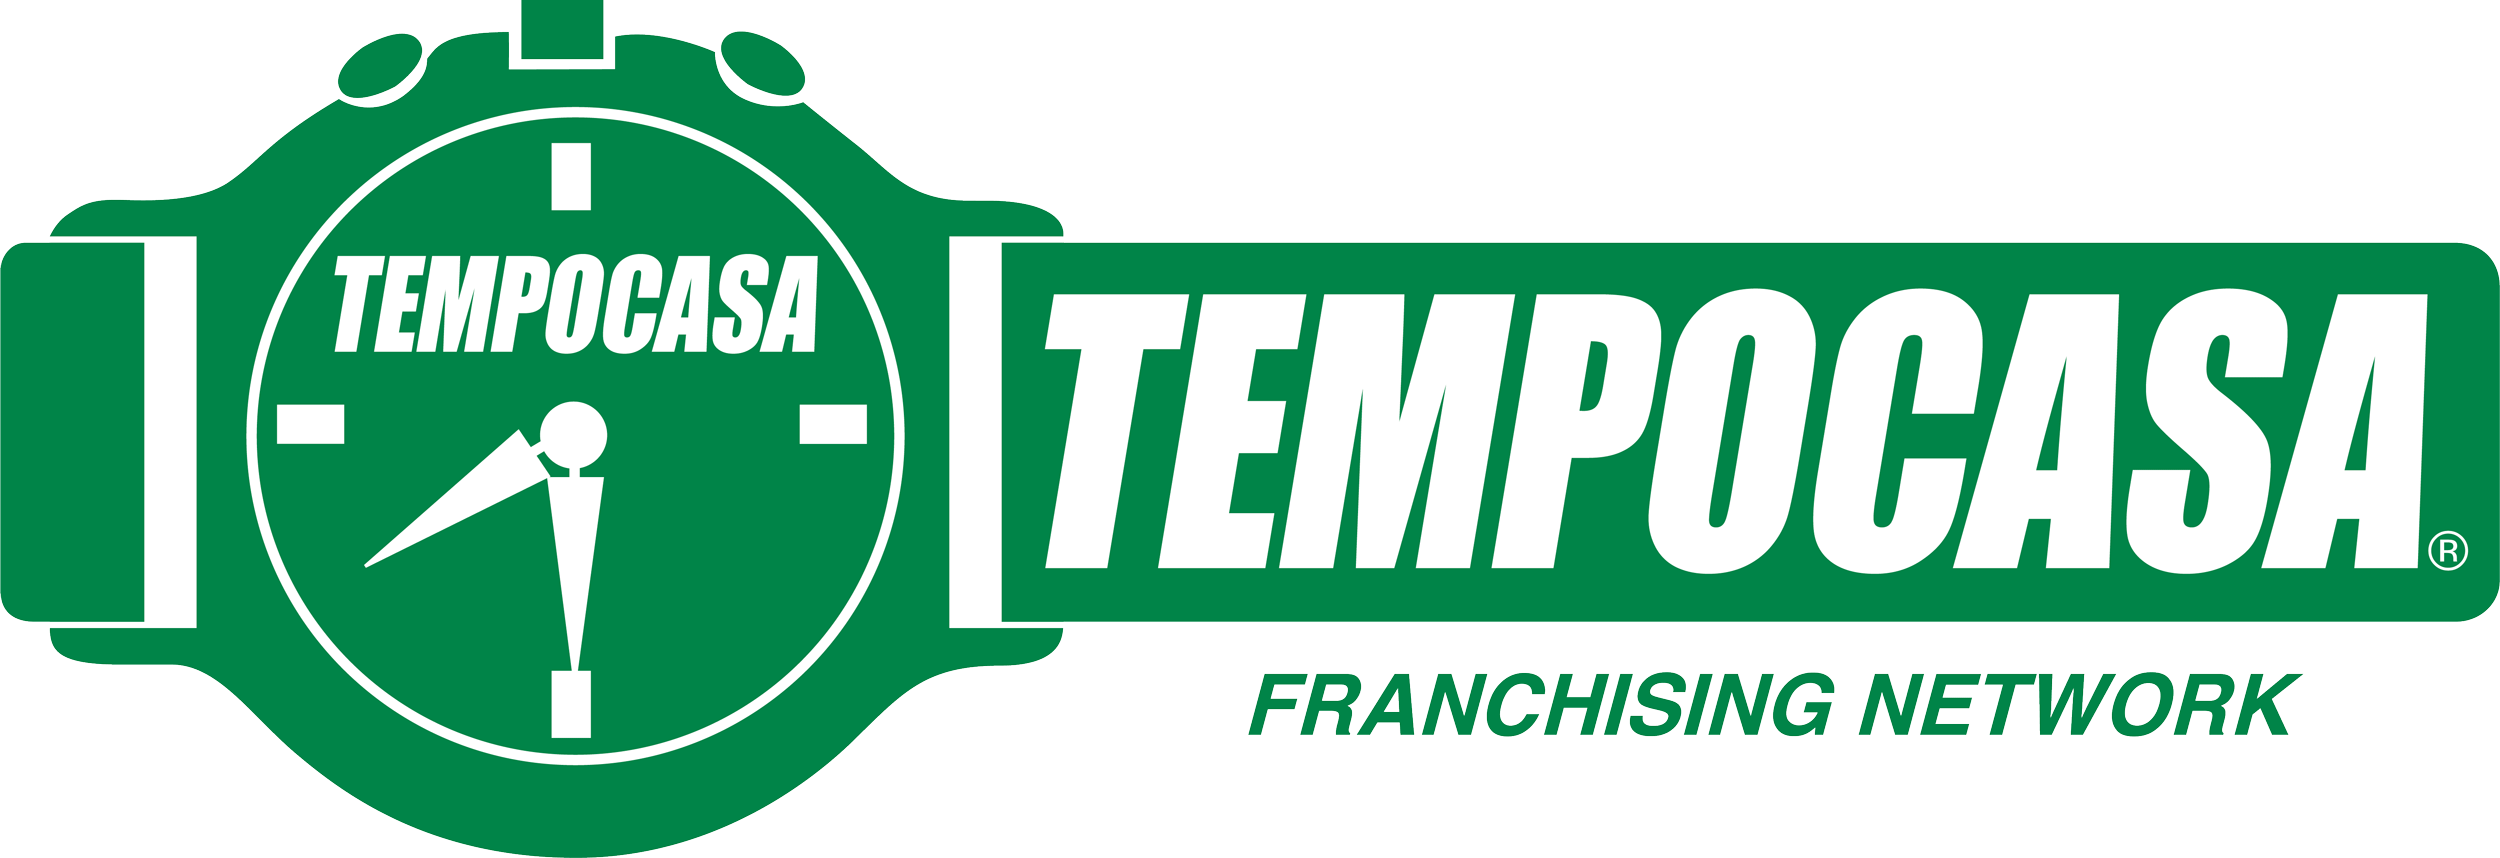 Milano - Farini - Tempocasa